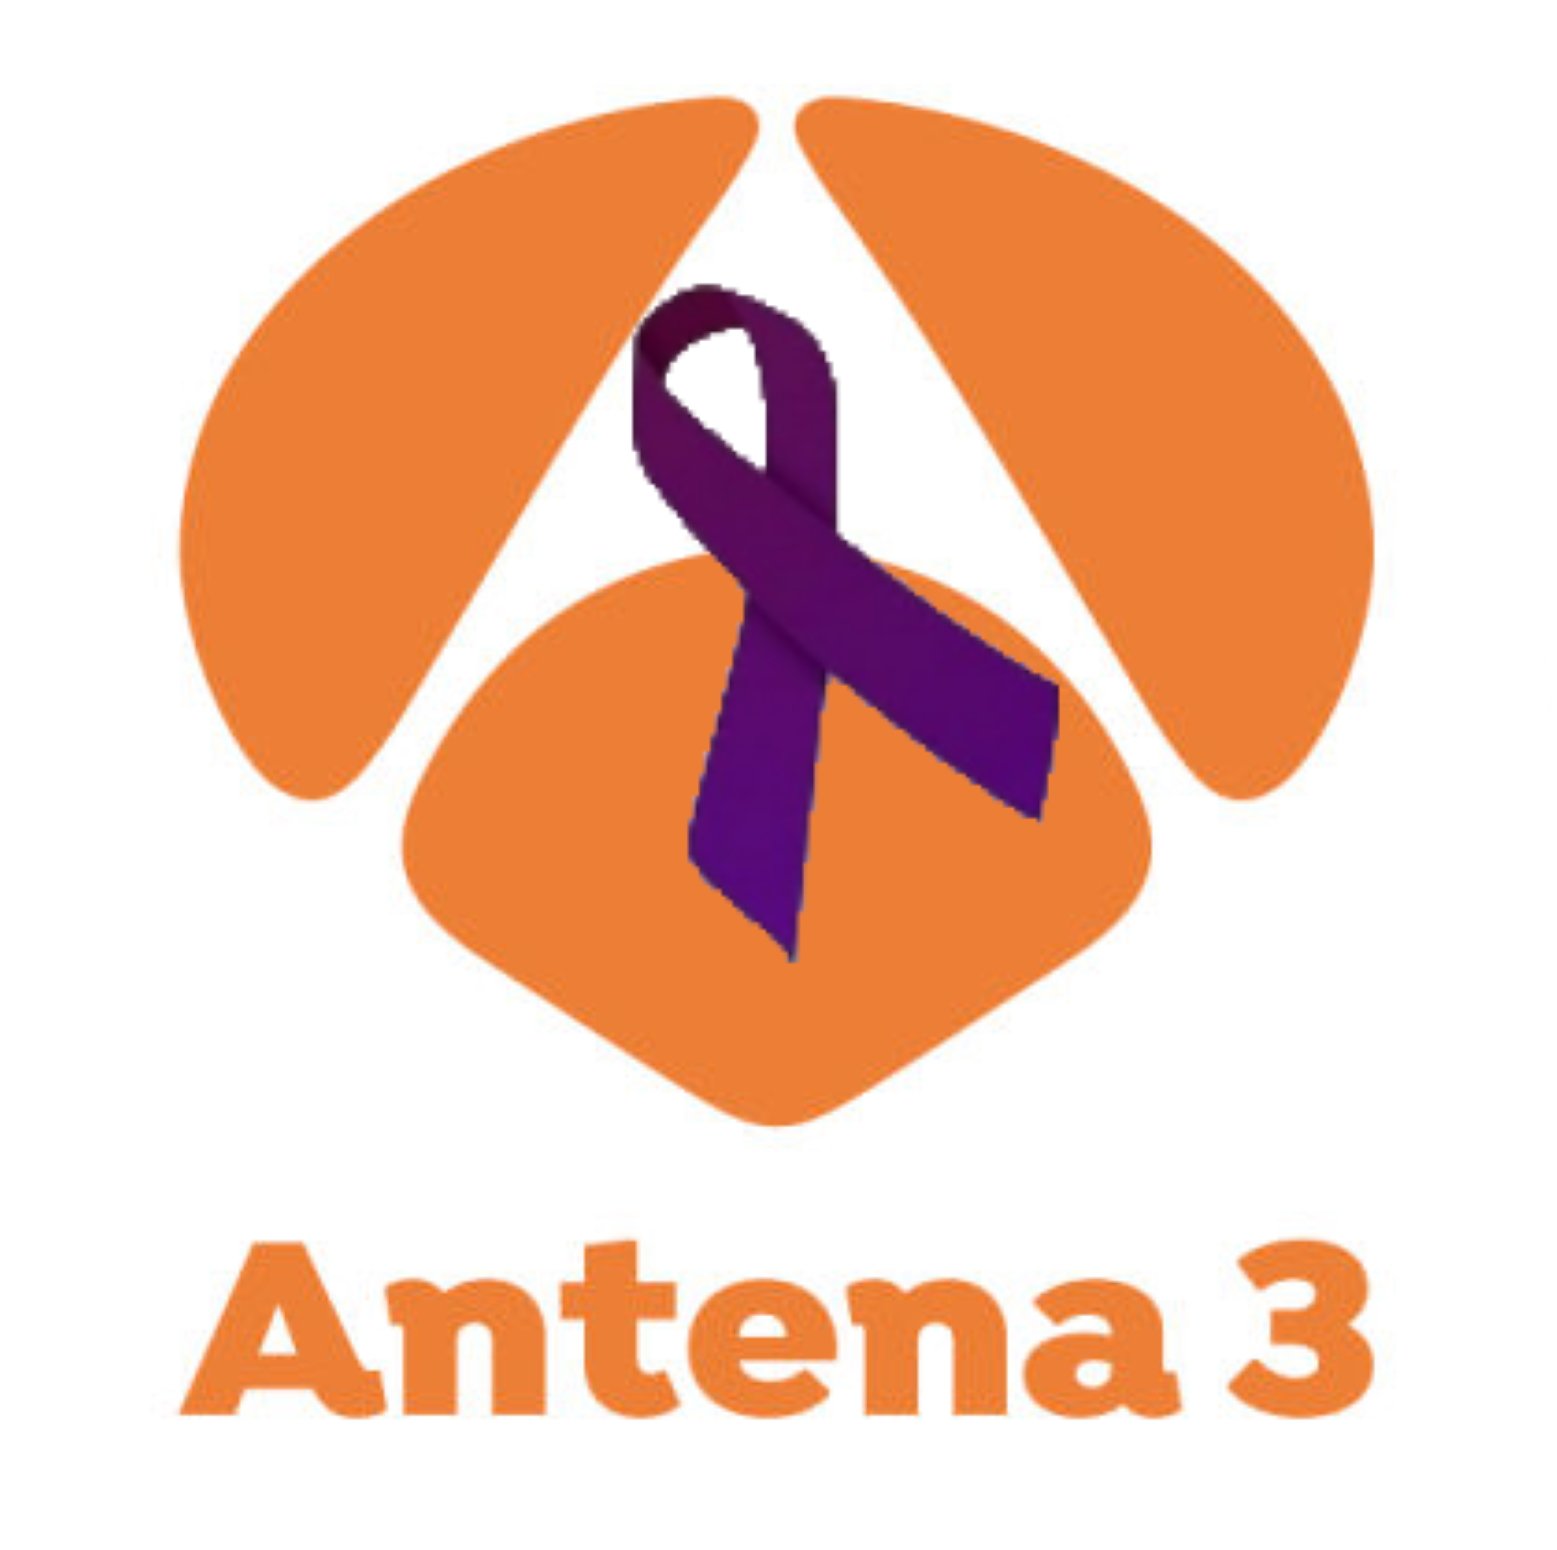 Clamor contra el irresponsable titular de Antena 3 sobre las víctimas de violación